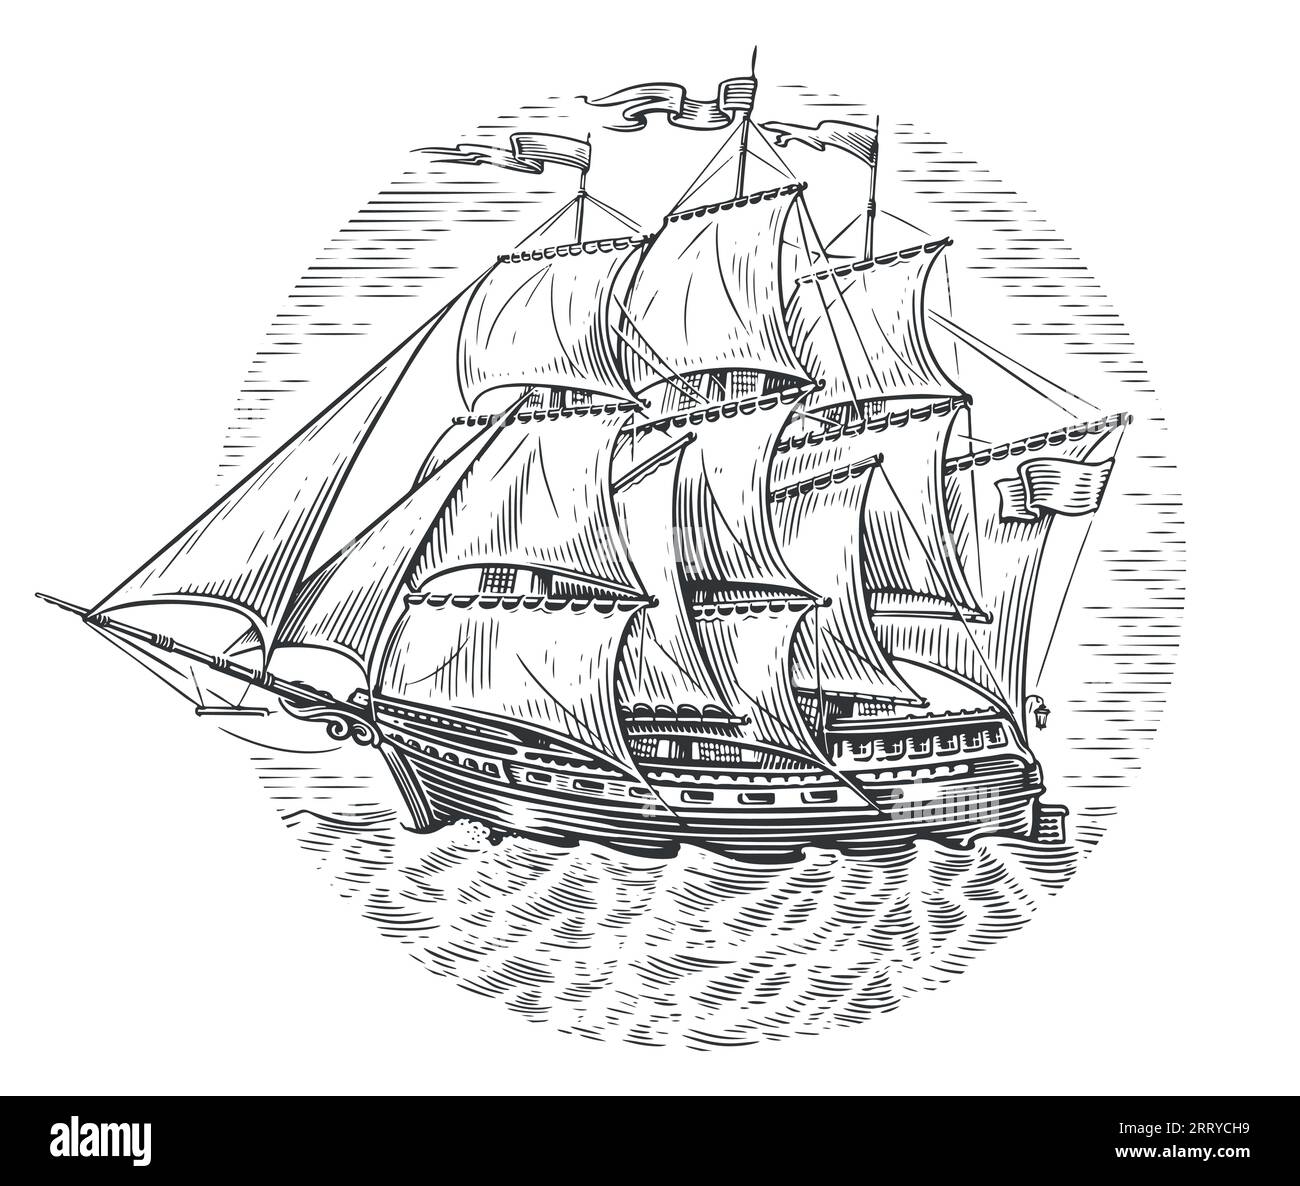 Schiff Fregatte Segelboot alte Skizze Hand gezeichnete Vektor-Illustration. Vintage-Gravur Stock Vektor